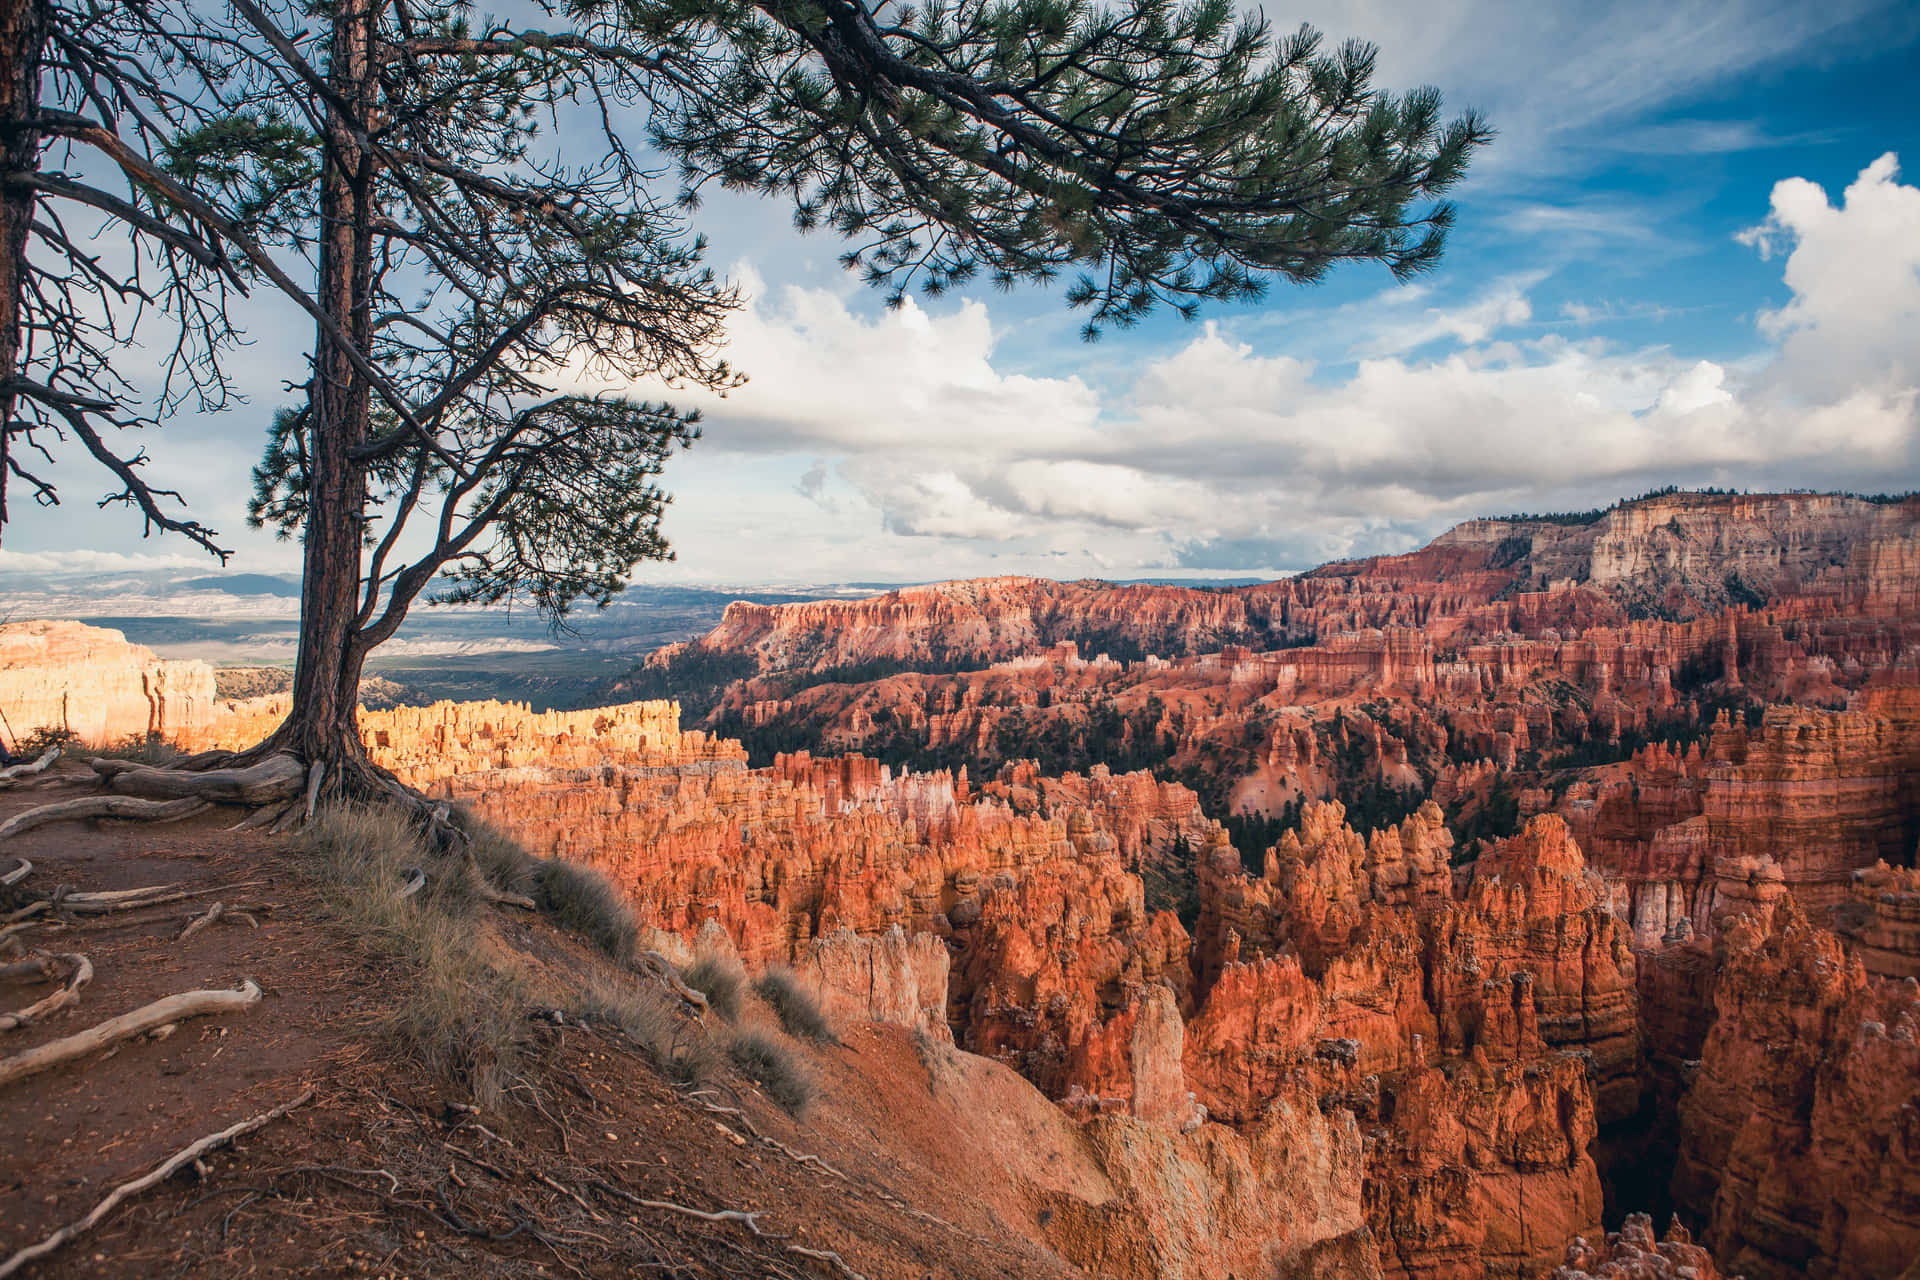 Parquenacional Bryce Canyon Hoodoos Observados Por Uma Árvore Na Tela De Fundo Do Computador Ou Do Celular. Papel de Parede